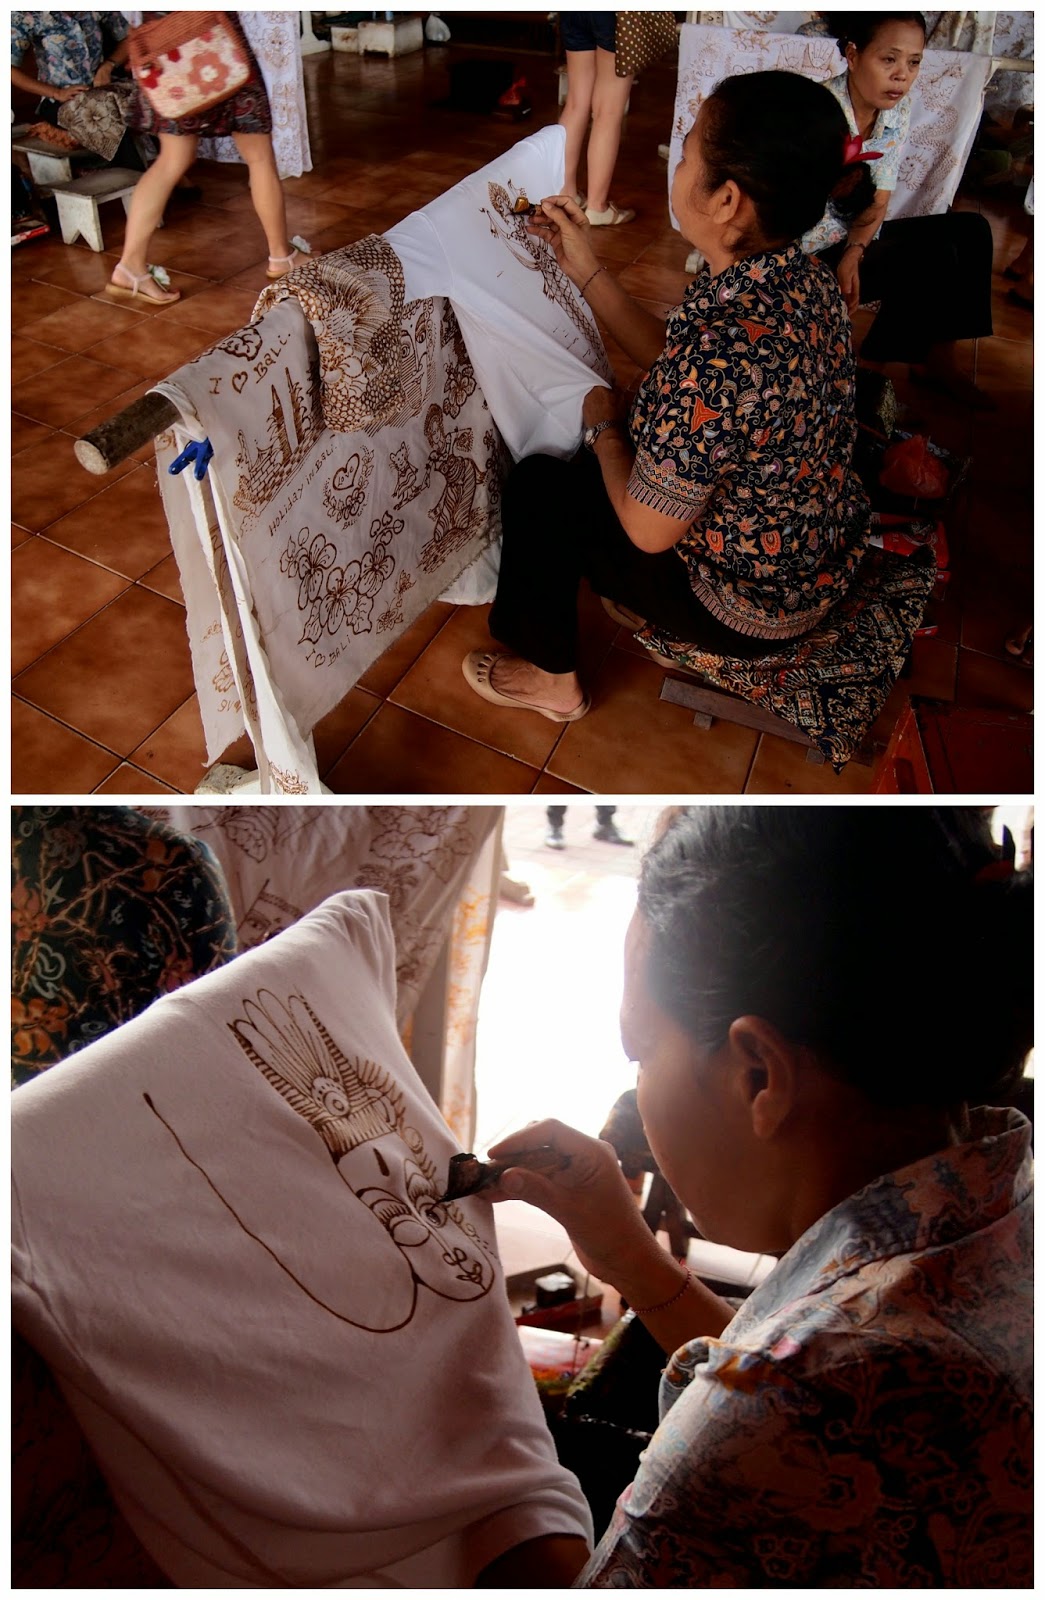 Batik Painting